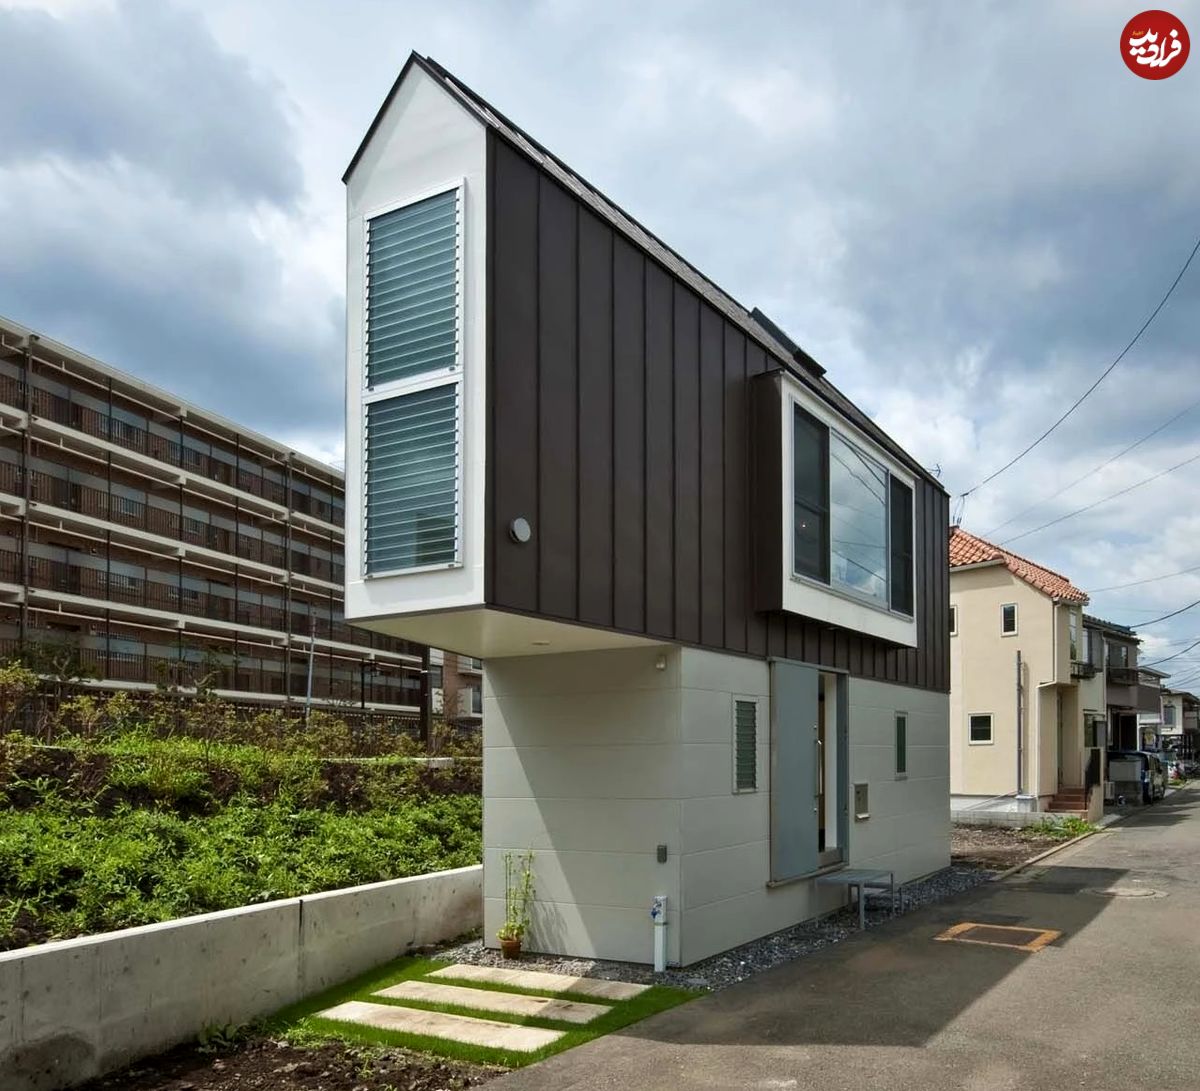 (تصاویر) جادوی باورنکردنی معماری ژاپنی در این خانۀ مثلثی